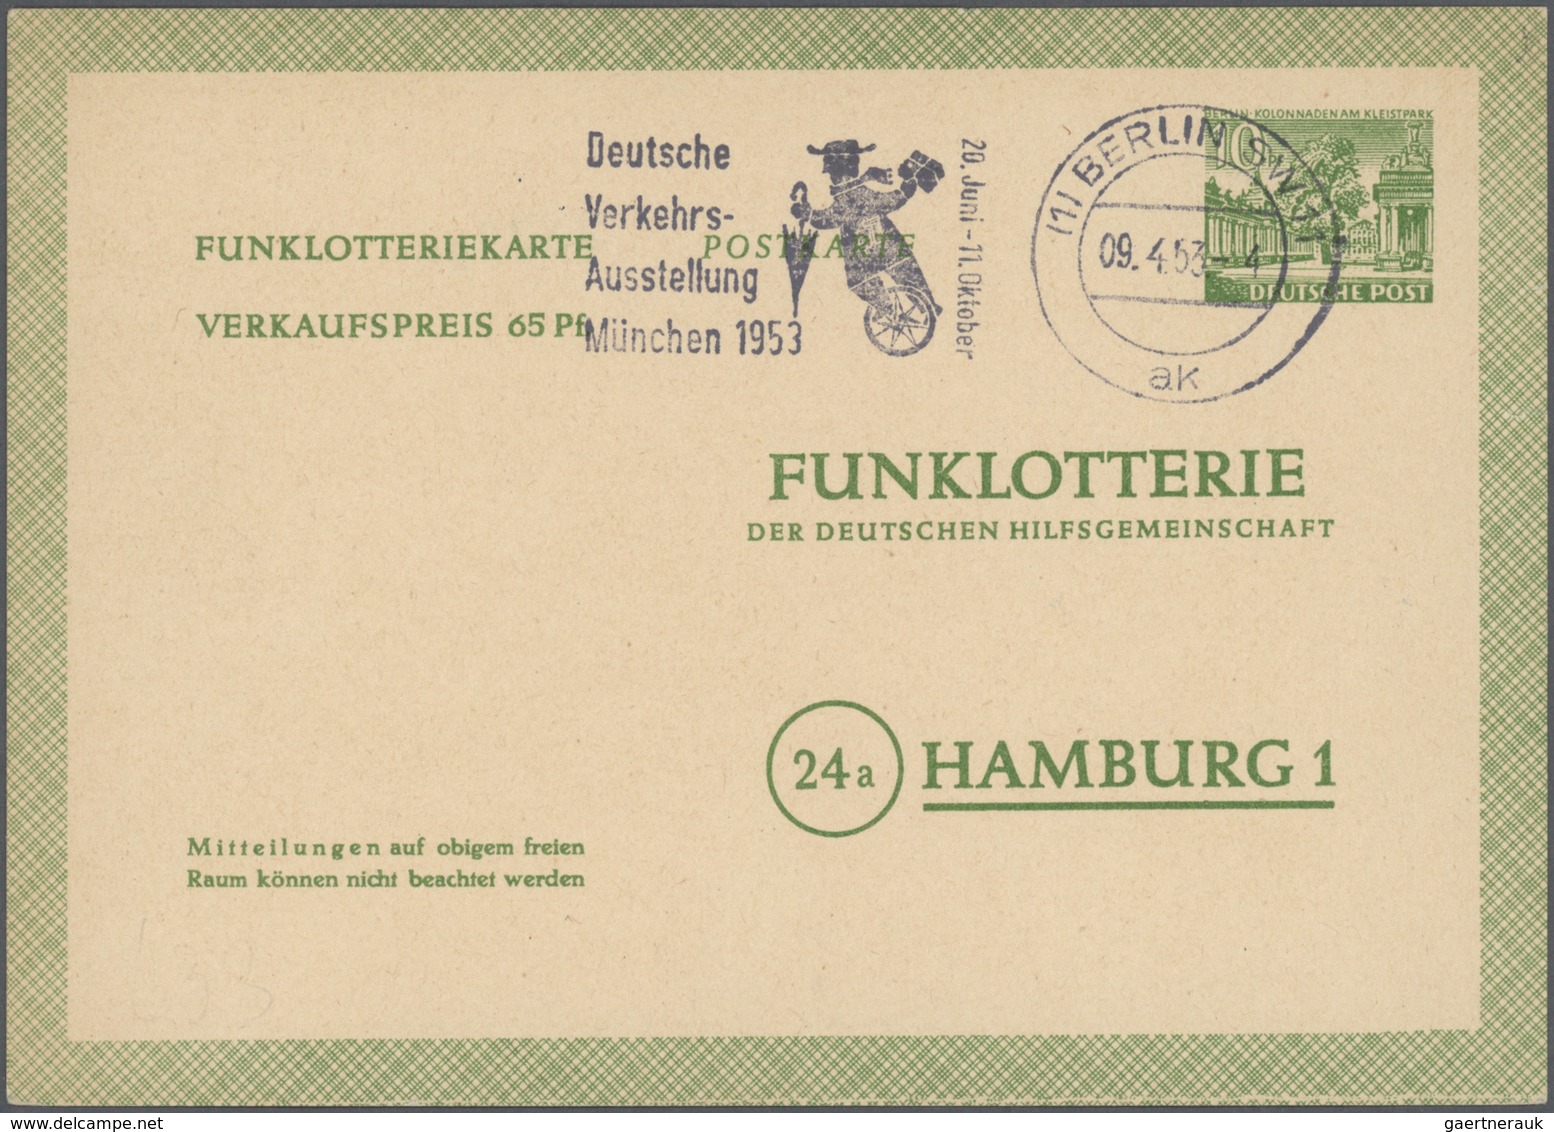 Berlin - Ganzsachen: ab 1949, Partie von ca. 200 Ganzsachenkarten/-umschlägen ab Währungsgeschädigte